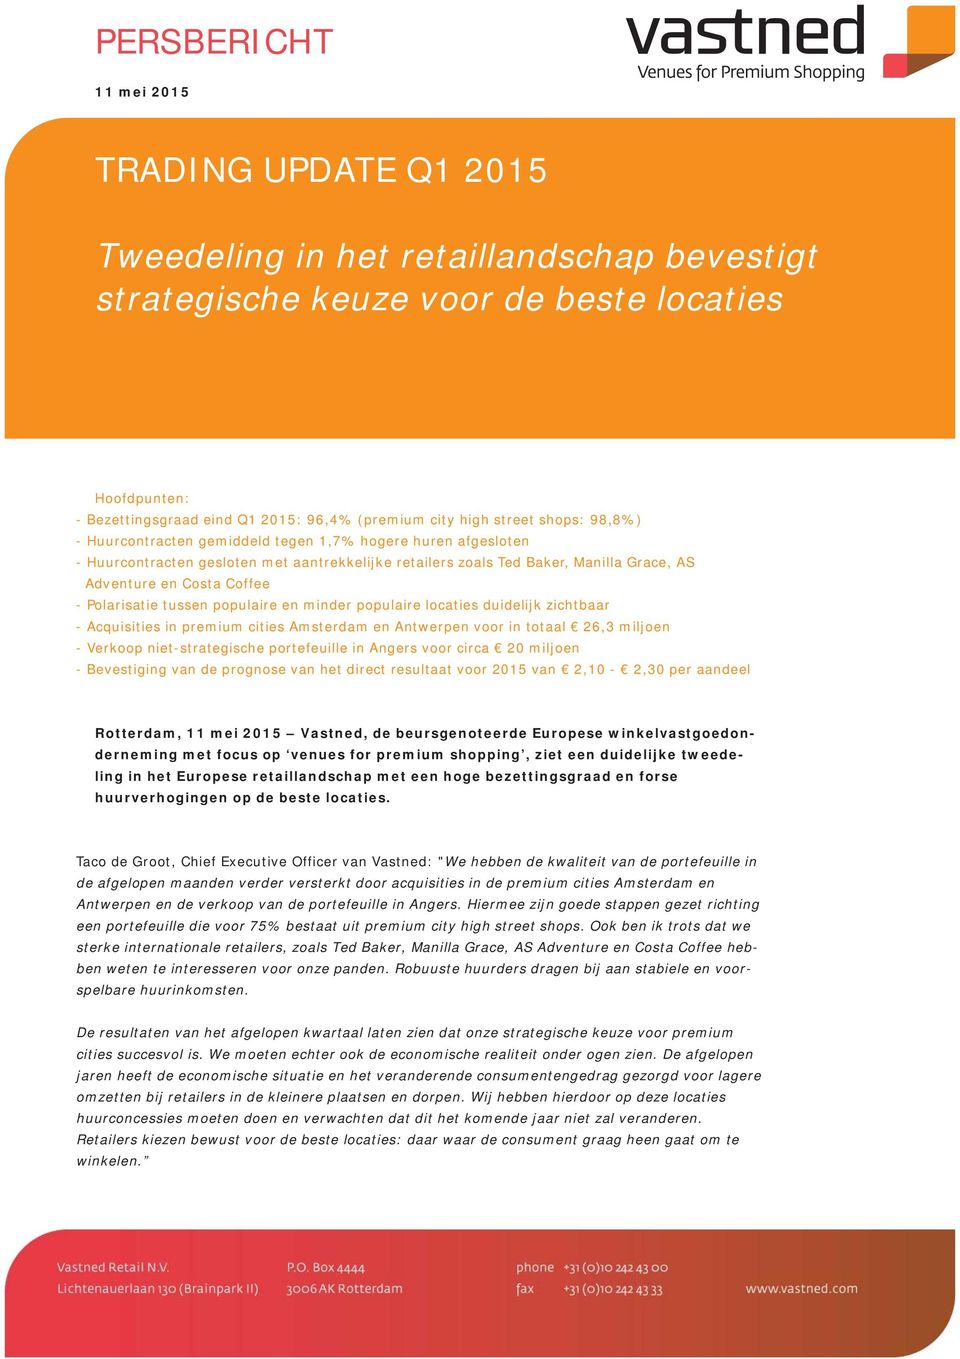 Polarisatie tussen populaire en minder populaire locaties duidelijk zichtbaar - Acquisities in premium cities Amsterdam en Antwerpen voor in totaal 26,3 miljoen - Verkoop niet-strategische